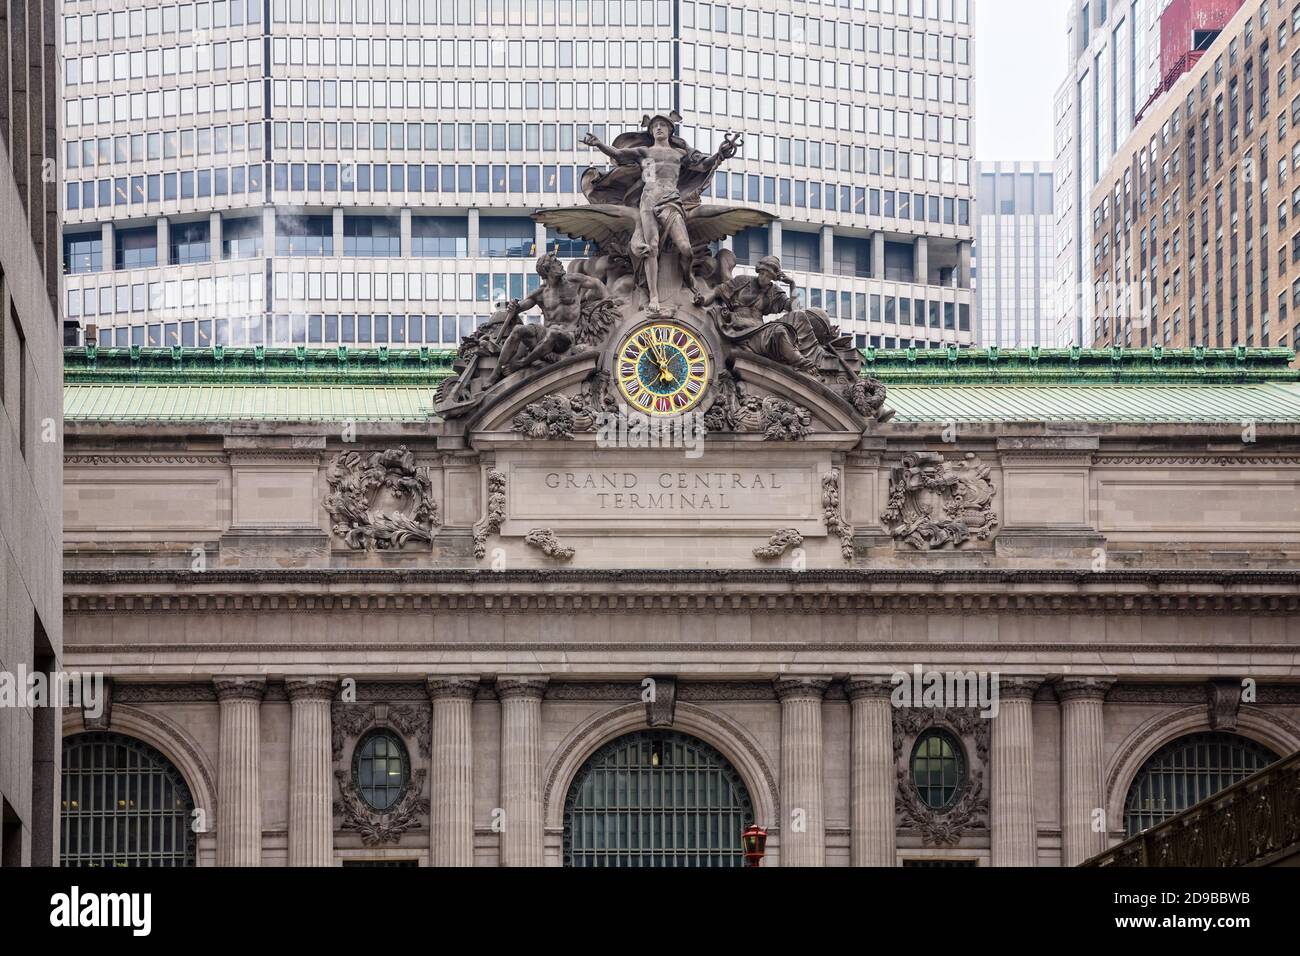 NEW YORK, Stati Uniti d'America - 02 maggio 2016: Grand Central Station a New York. Statua iconica del Dio greco Mercurio che adorna la facciata sud del Grand Central Foto Stock